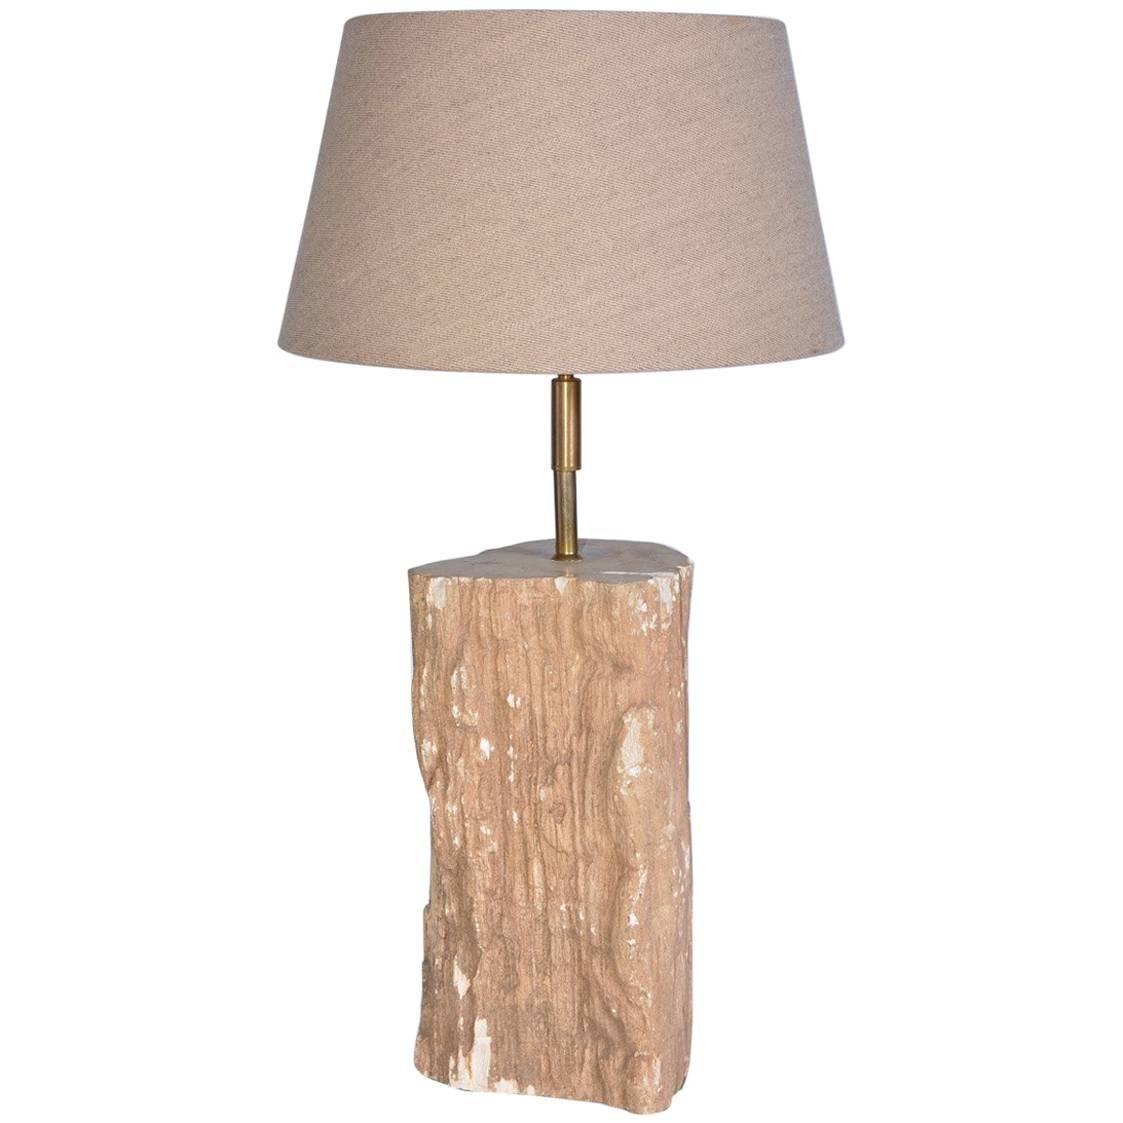 Lampe aus versteinertem Holz, Lampe aus Holz